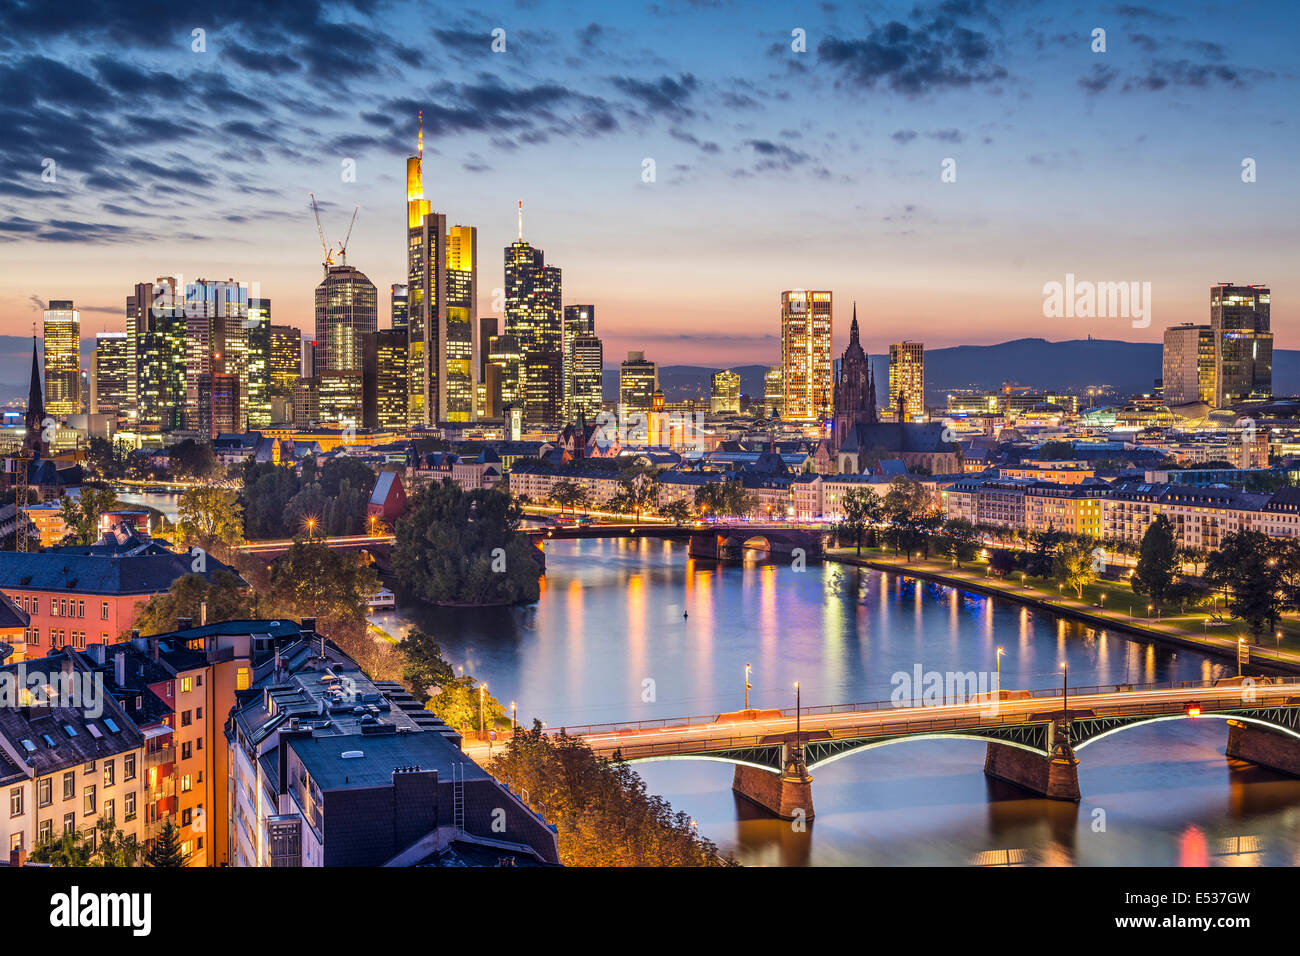 Frankfurt am Main, Germany Financial District skyline. Stock Photo